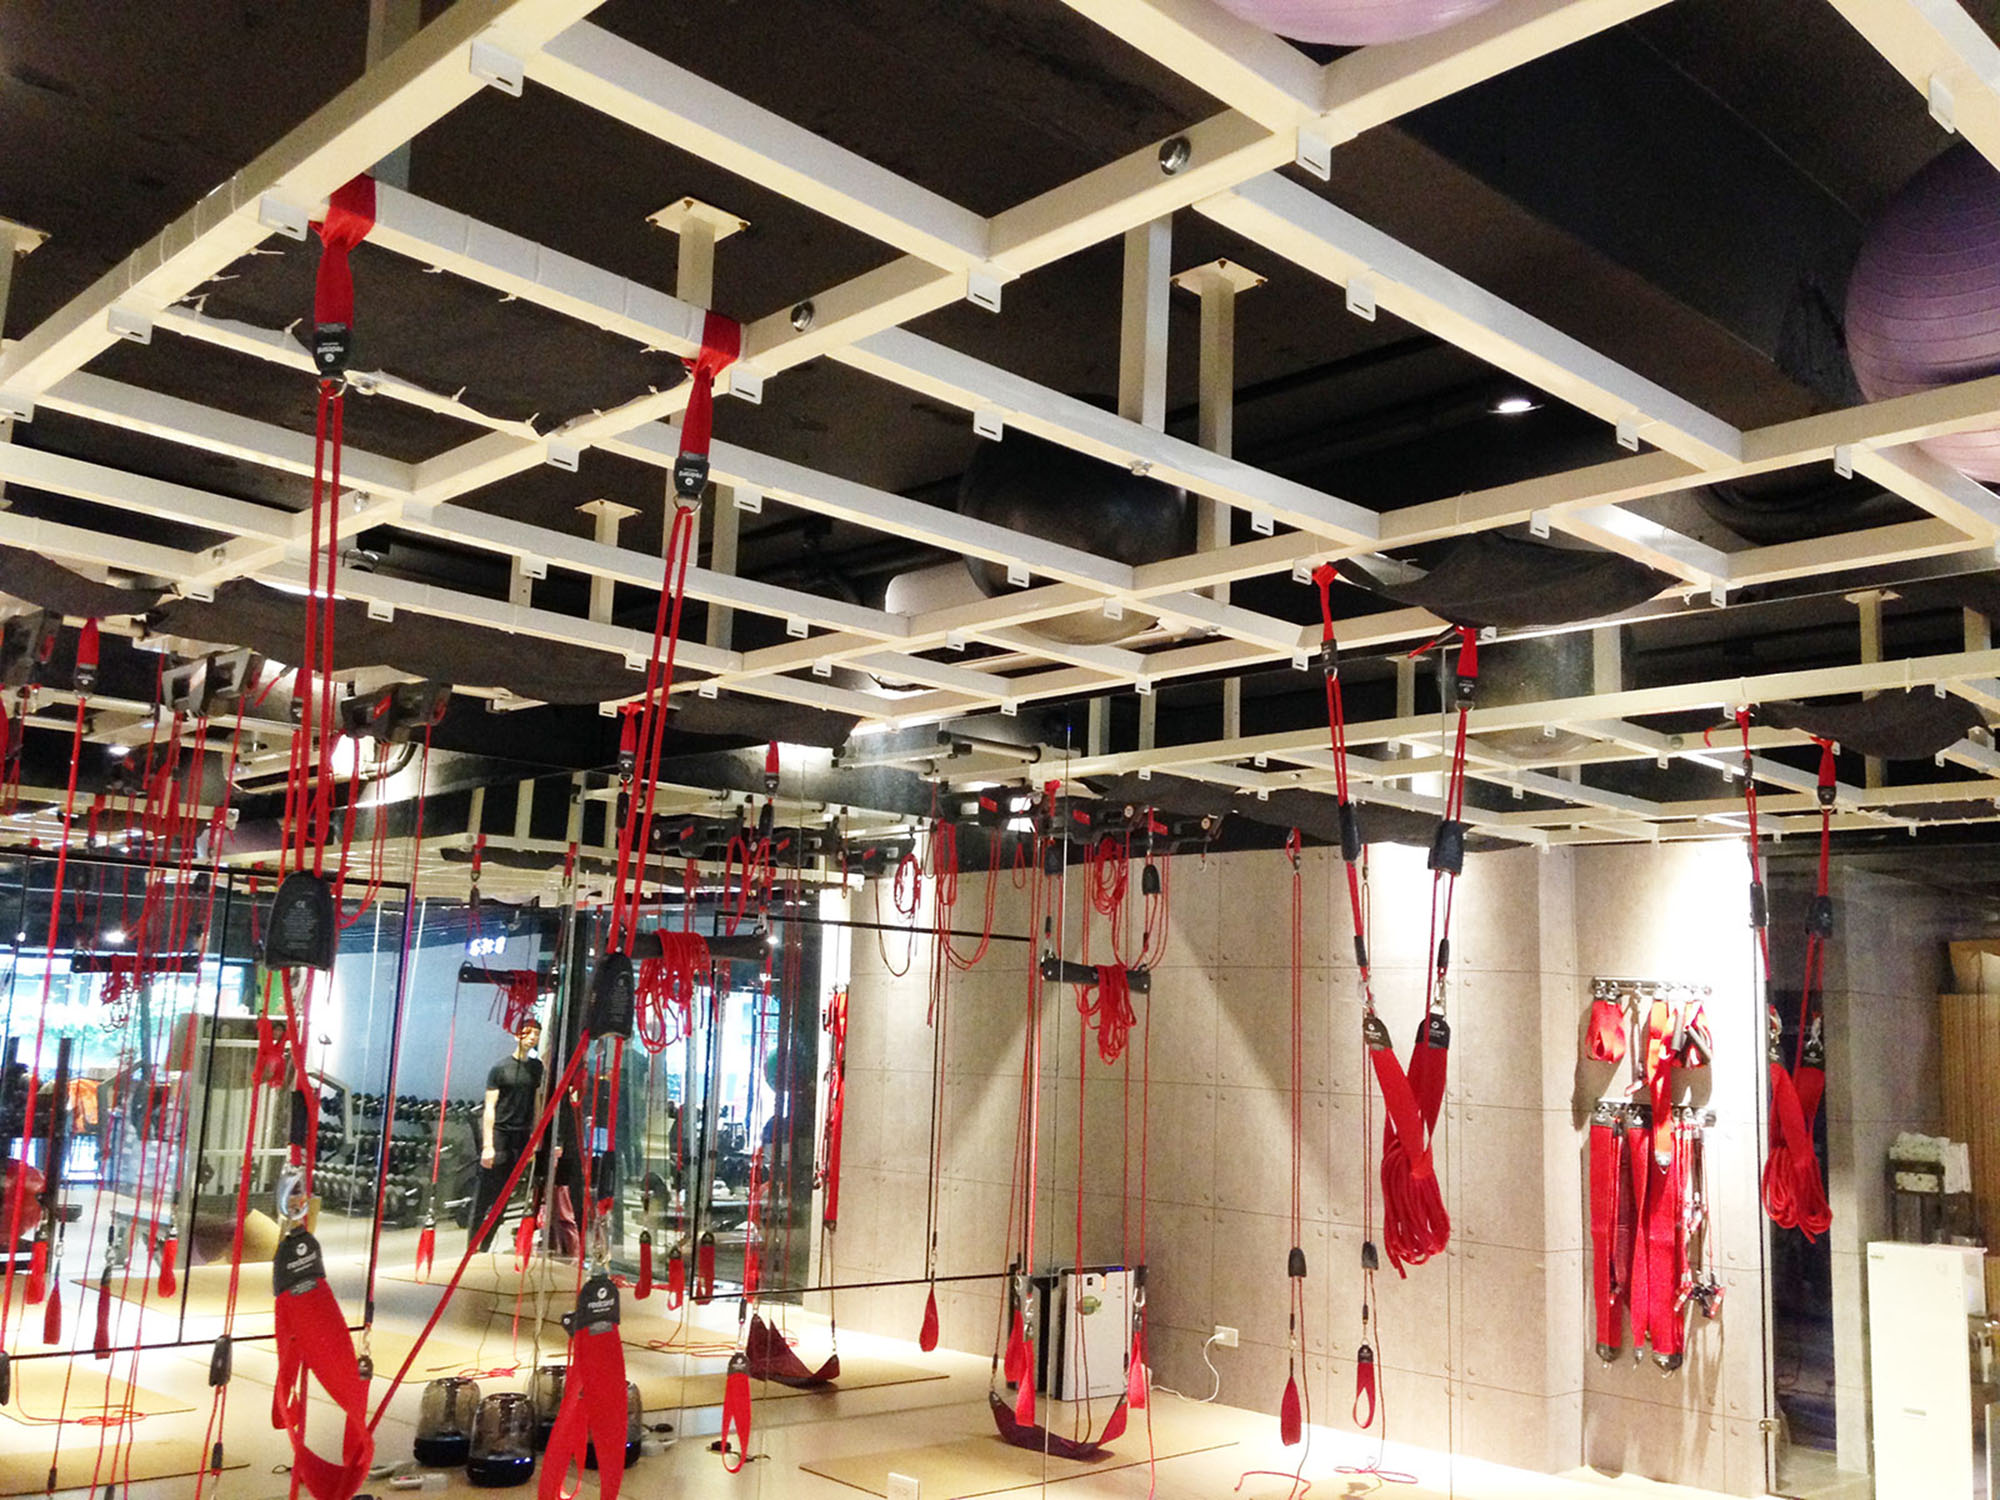 紅繩懸吊-redcord-energym-台北市松山區-核心肌群-腰痠背痛-腰酸背痛-調整體態